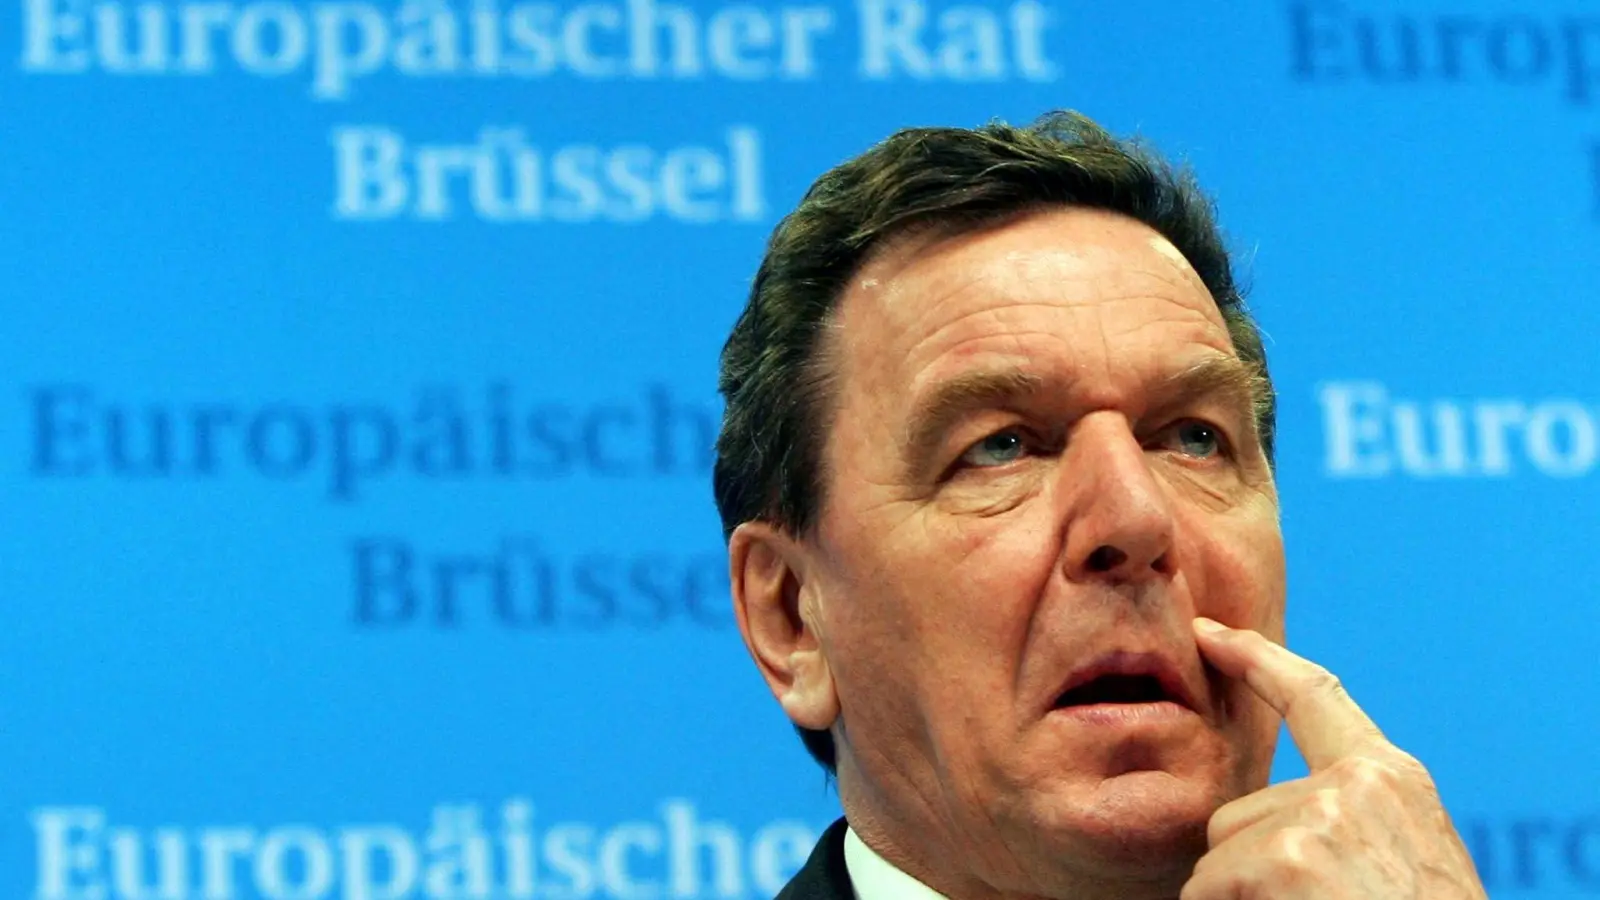 Der frühere Bundeskanzler Gerhard Schröder steht seit Beginn des russischen Angriffskrieges gegen die Ukraine wegen seiner Verbindungen zu russischen Unternehmen in der Kritik. (Foto: Olivier Hoslet/epa/dpa)